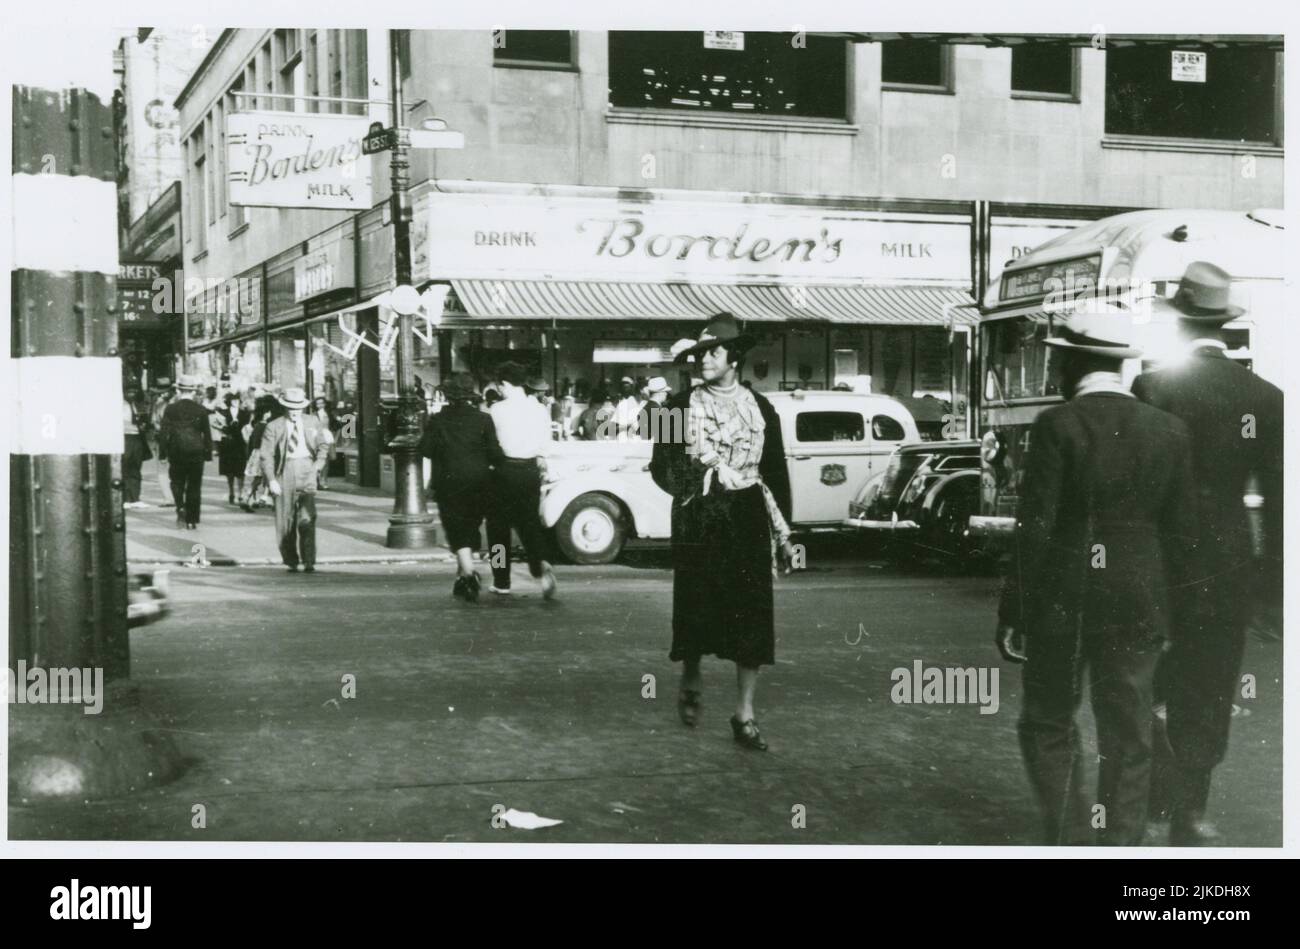 Frau, die die Straße in Harlem an der West 125. Street und Eighth Avenue, 1939 überquert. Grossman, Sid (Fotograf). Straßenszenen Harlem, 1900-1970s Harlem, Stockfoto